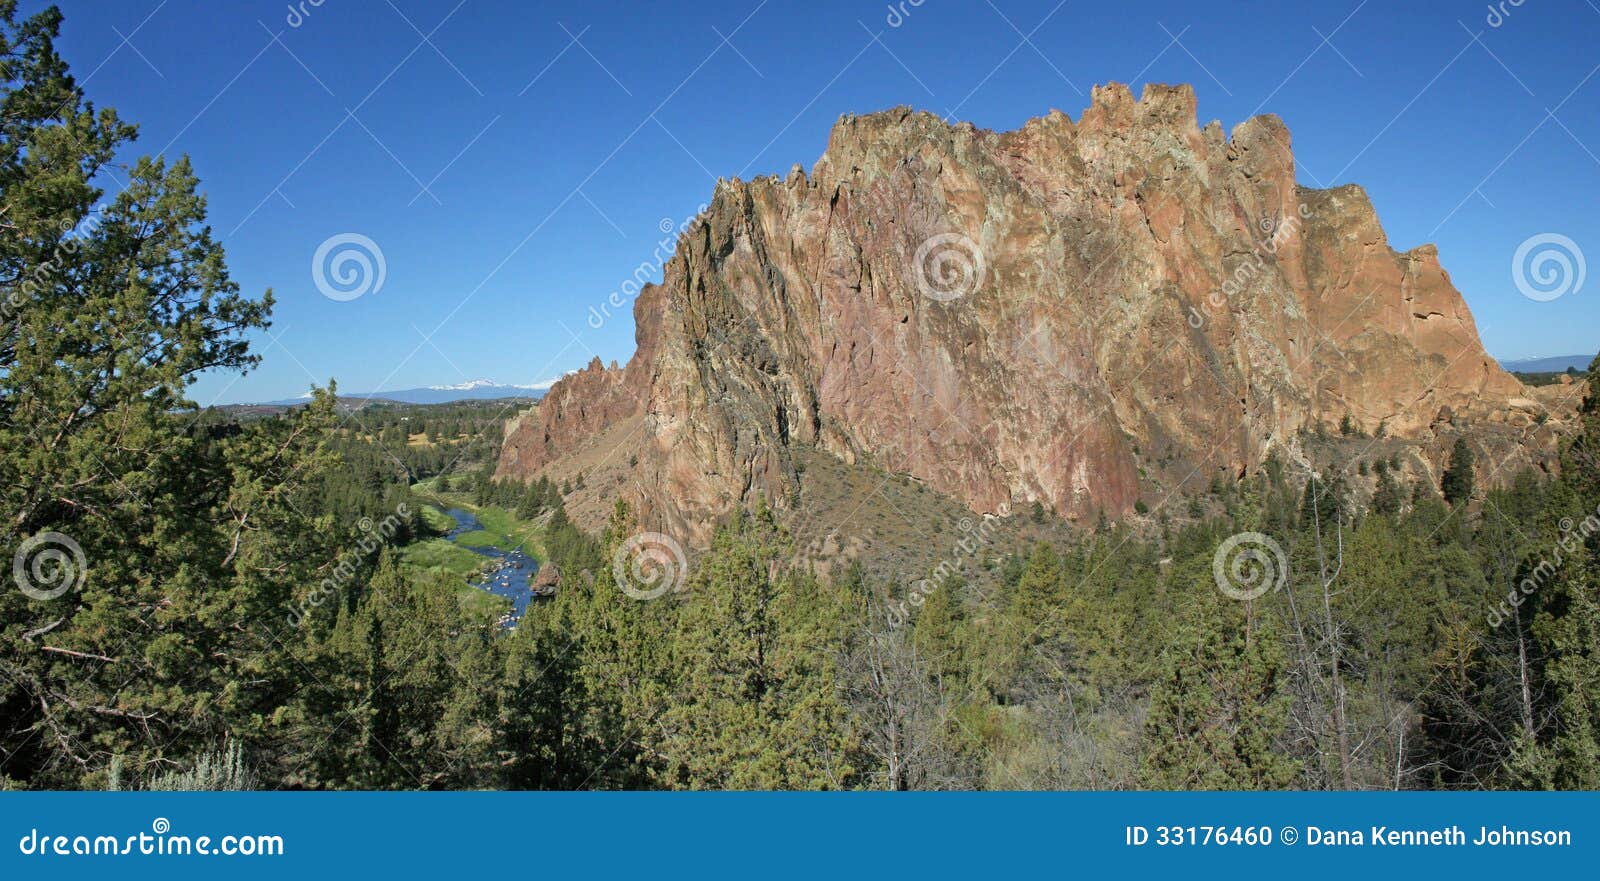 史密斯岩石国家公园- Terrebonne，俄勒冈. 史密斯岩石是岩石550只脚参天的大量在Terrebonne，俄勒冈东部。形成起源于古老火山爆发。从南的最近熔岩流迫使弯曲的河反对它的纯粹岩石面孔。结果是一个壮观地美丽如画的站点和攀岩运动员的天堂。超过50万人每年参观史密斯岩石国家公园，一些攀登垂直的峭壁，其他远足英里足迹在它的基地附近和沿河。史密斯岩石可能是到中央俄勒冈什么艾瑞斯岩石是给在内地澳大利亚人。